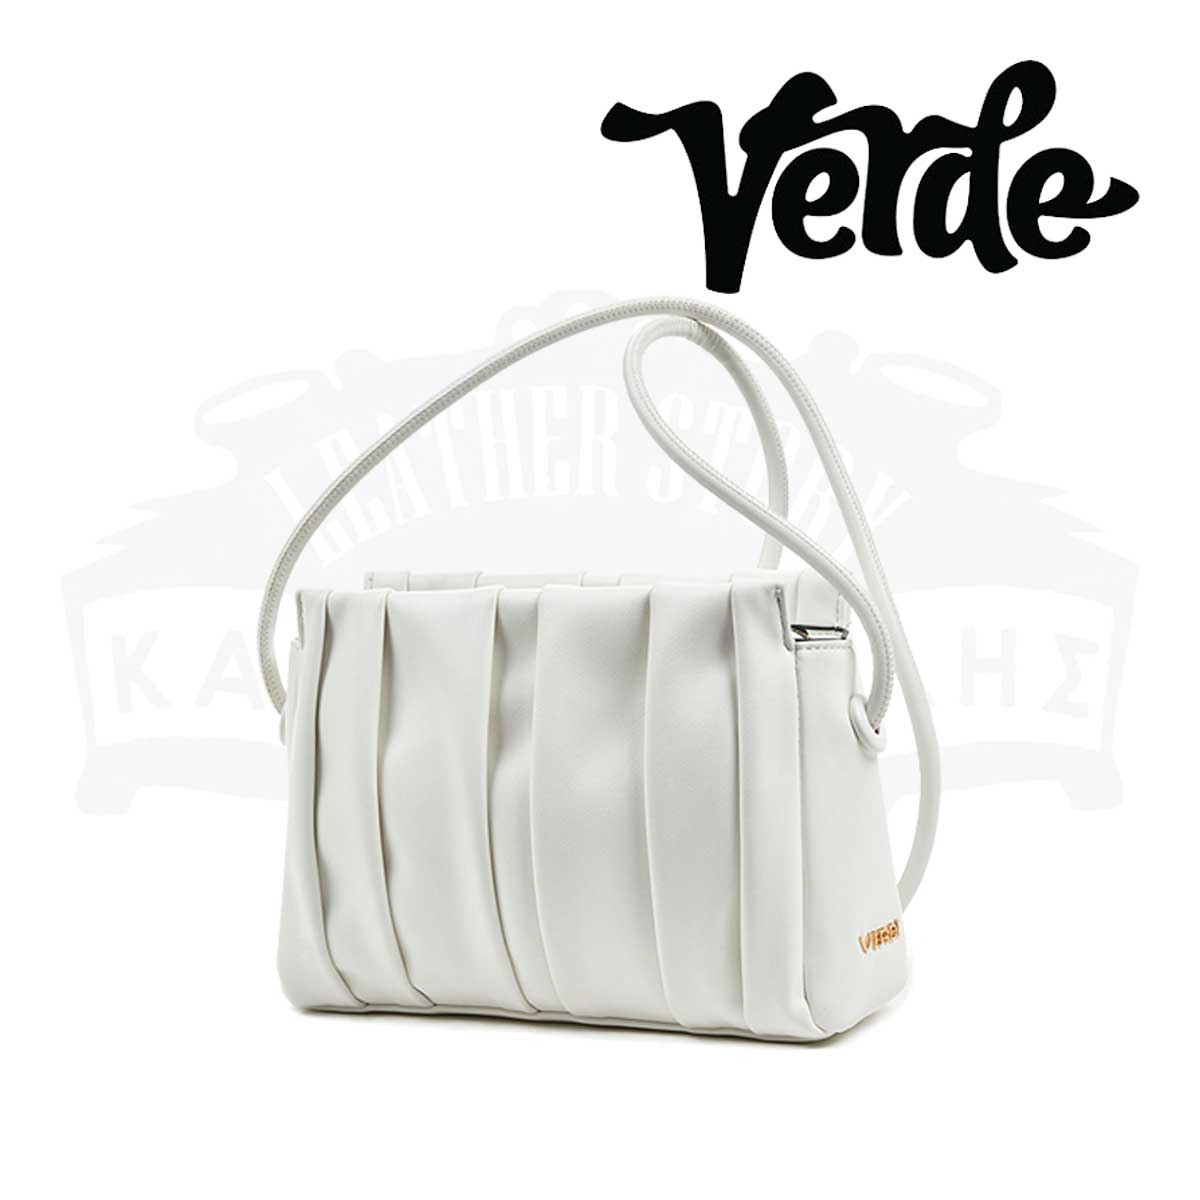 Women's Crossbody Bag in White color - VERDE